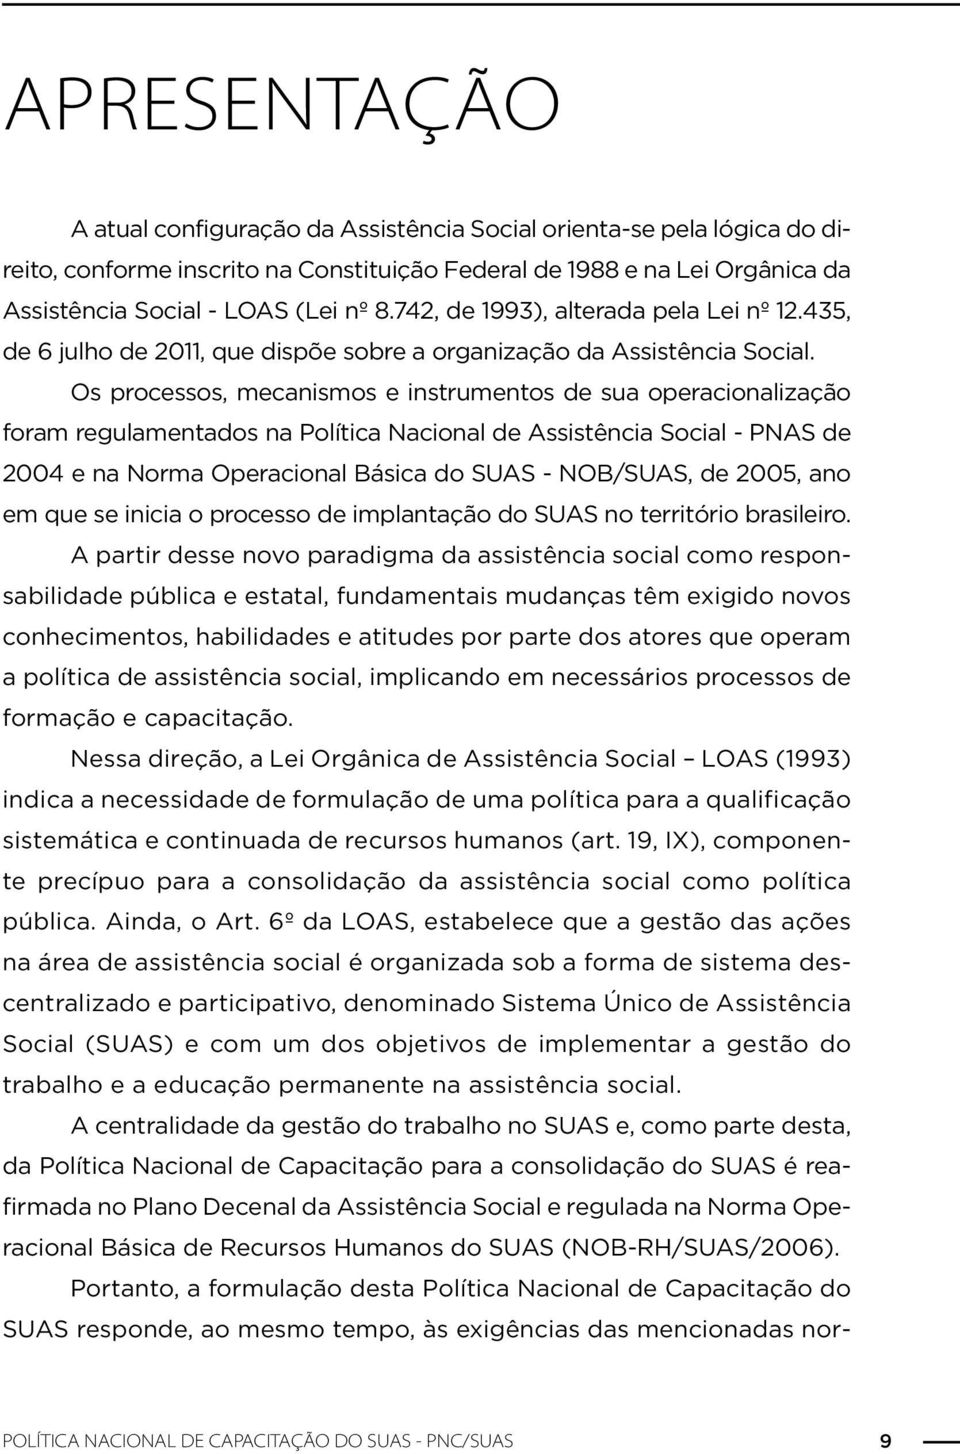 Os processos, mecanismos e instrumentos de sua operacionalização foram regulamentados na Política Nacional de Assistência Social - PNAS de 2004 e na Norma Operacional Básica do SUAS - NOB/SUAS, de